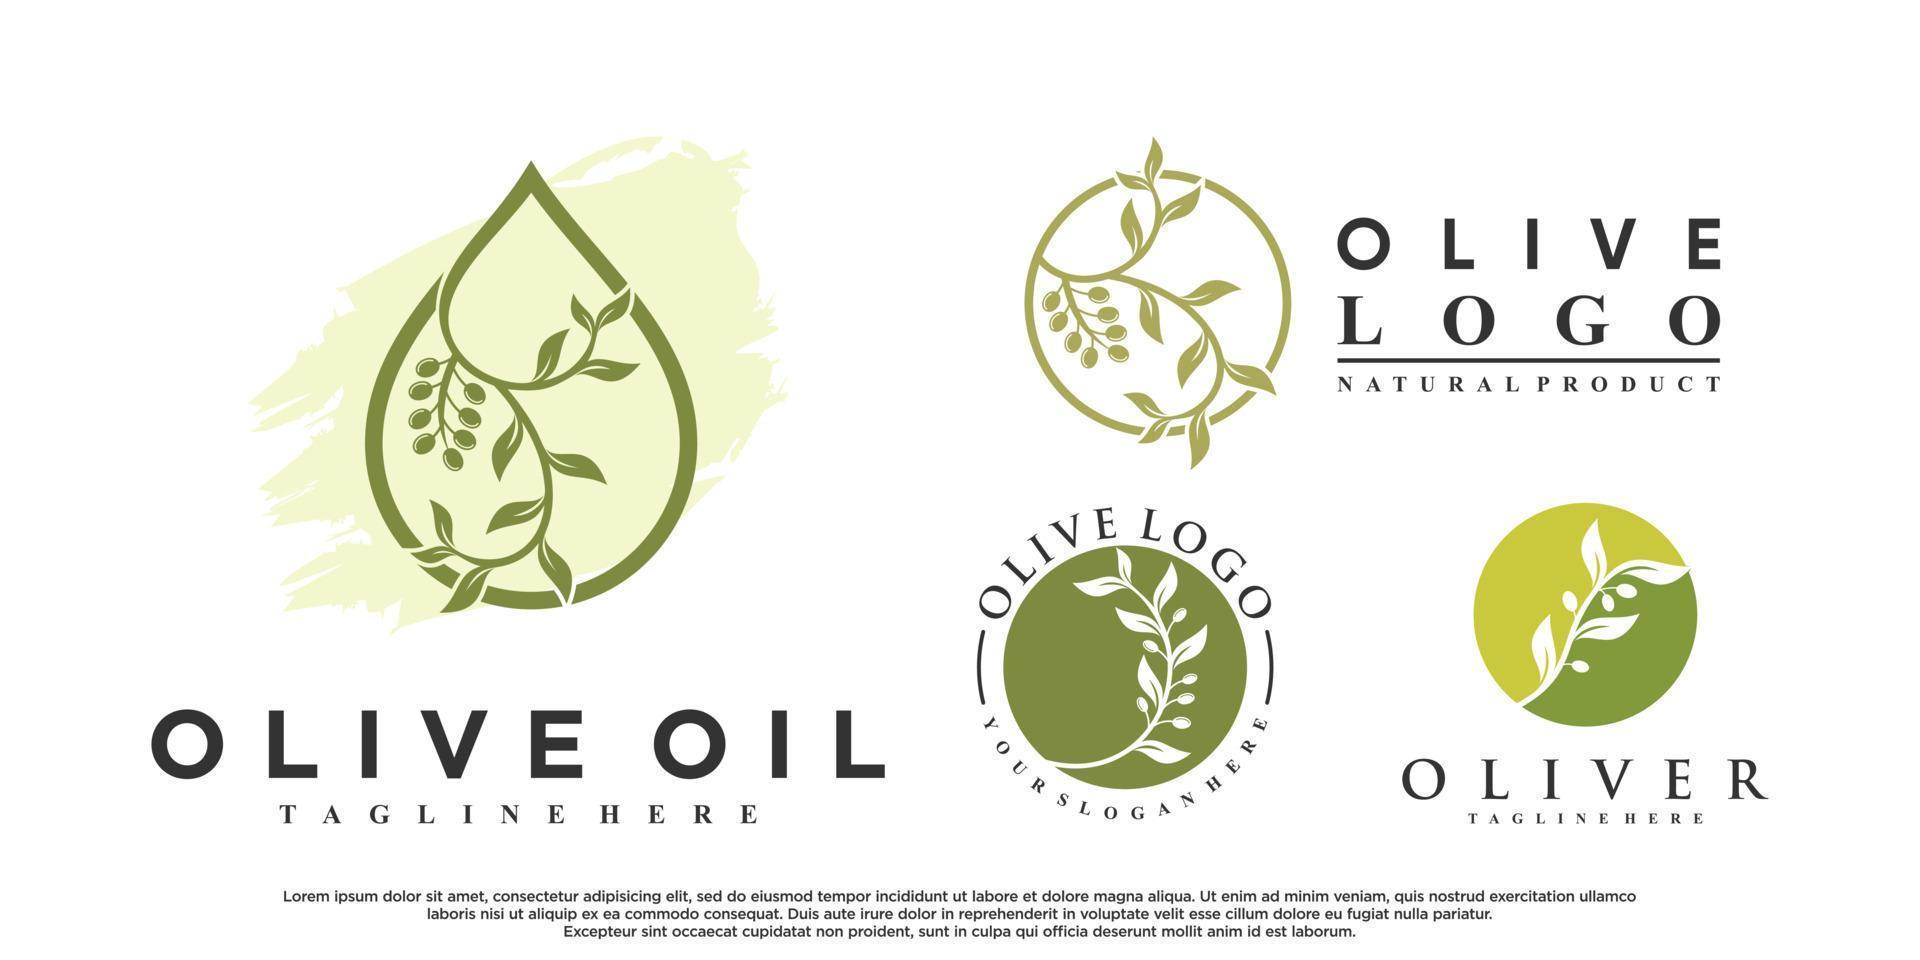 paquete de diseño de logotipo de aceite de oliva con vector premium de concepto creativo